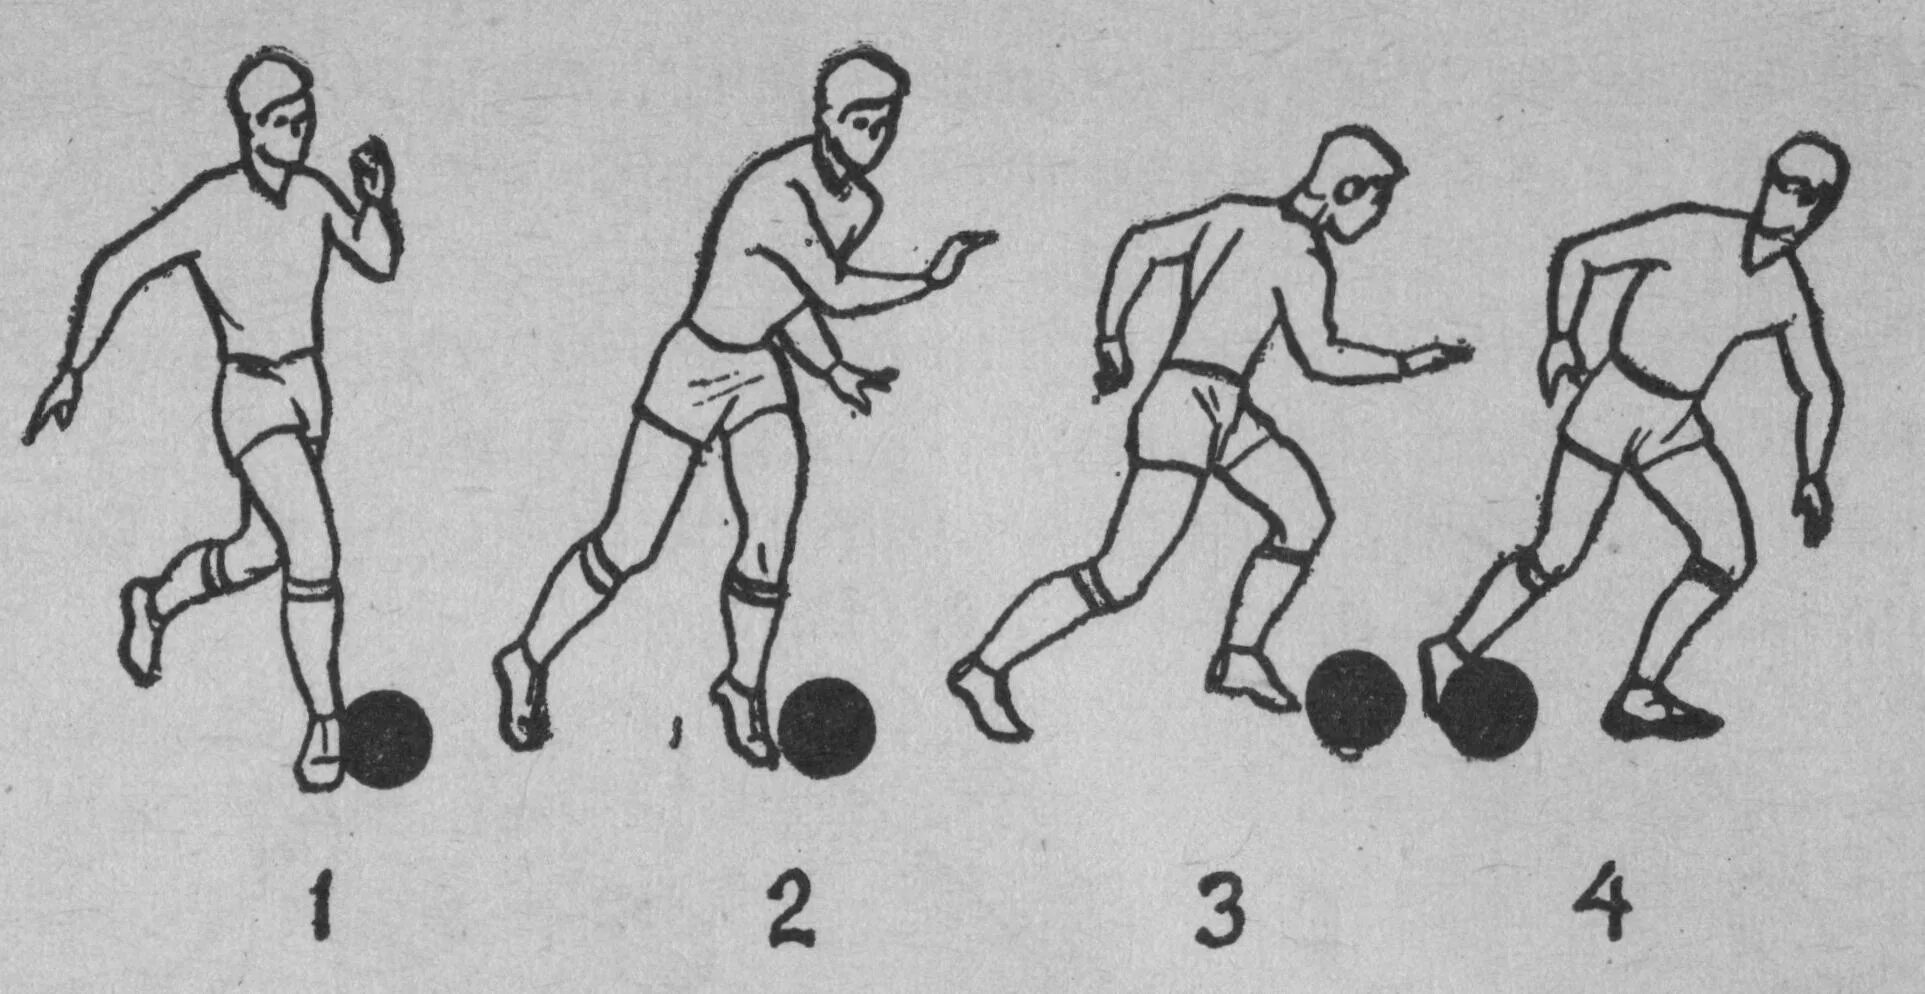 Удар вводящий мяч в игру. Ведение мяча ногой в футболе. Техники ведения мяча ногой в футболе. Приемы ведения мяча в футболе. Упражнения на технику ведения мяча в футболе.